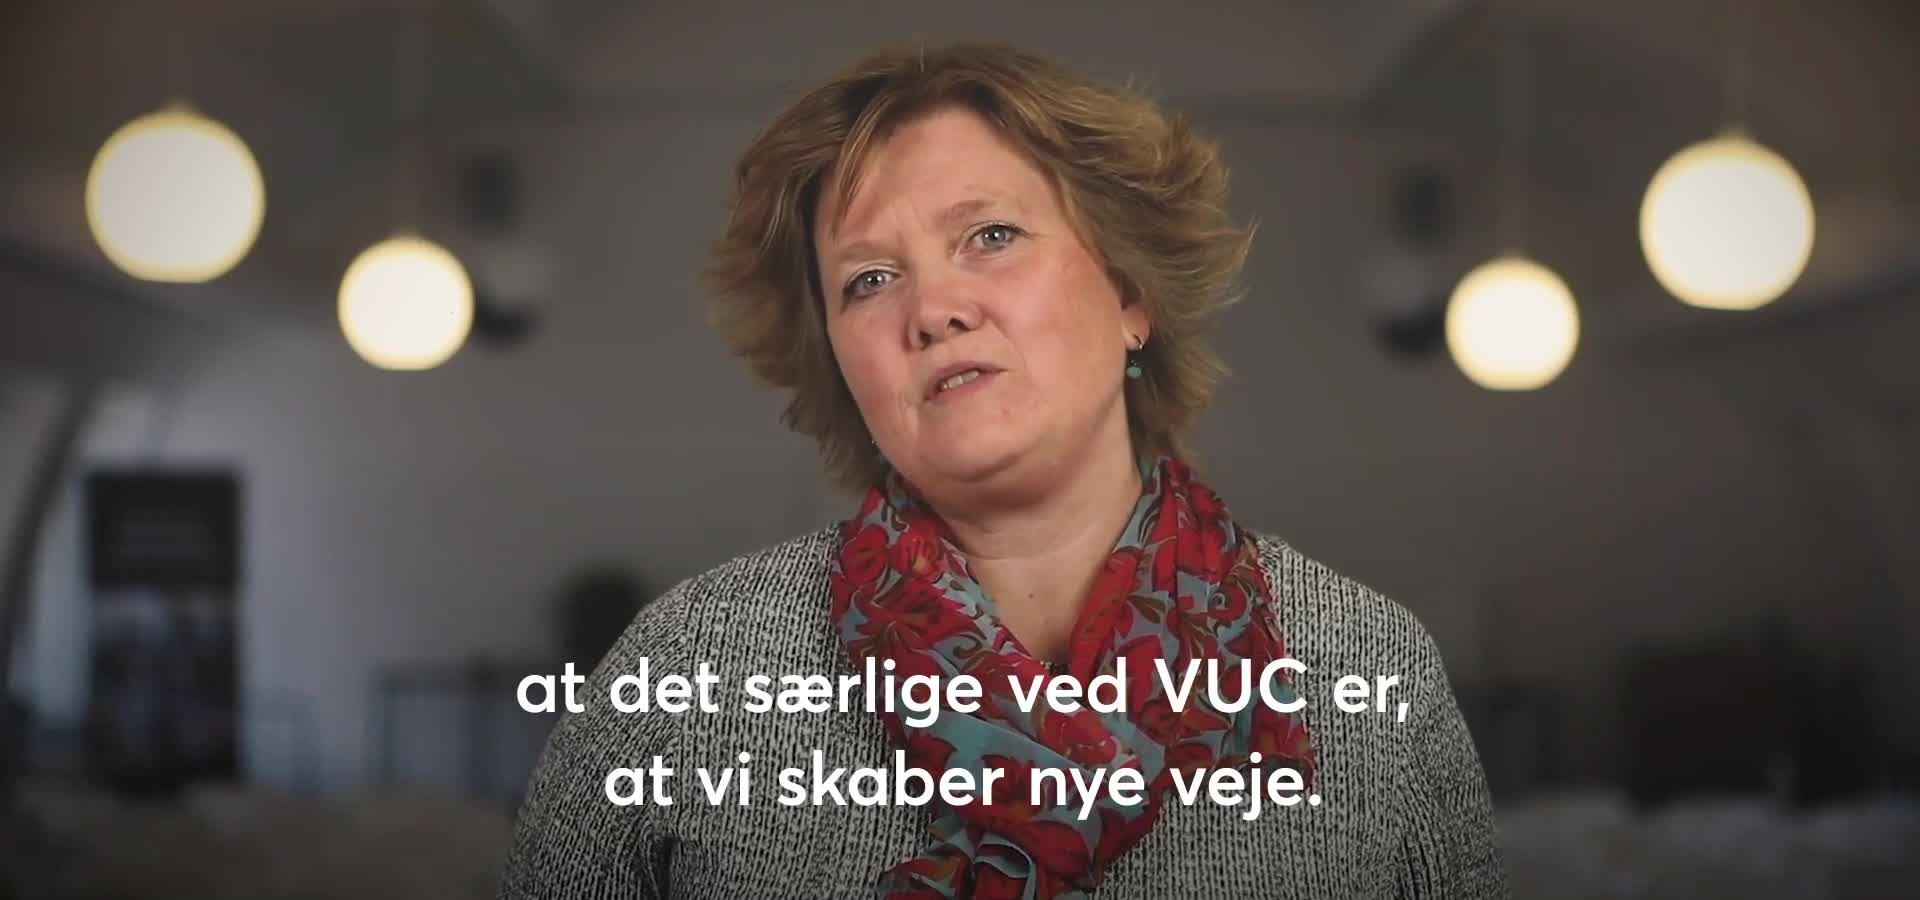 Pernille Brøndum fortæller om, hvordan VUC skaber nye veje for alle